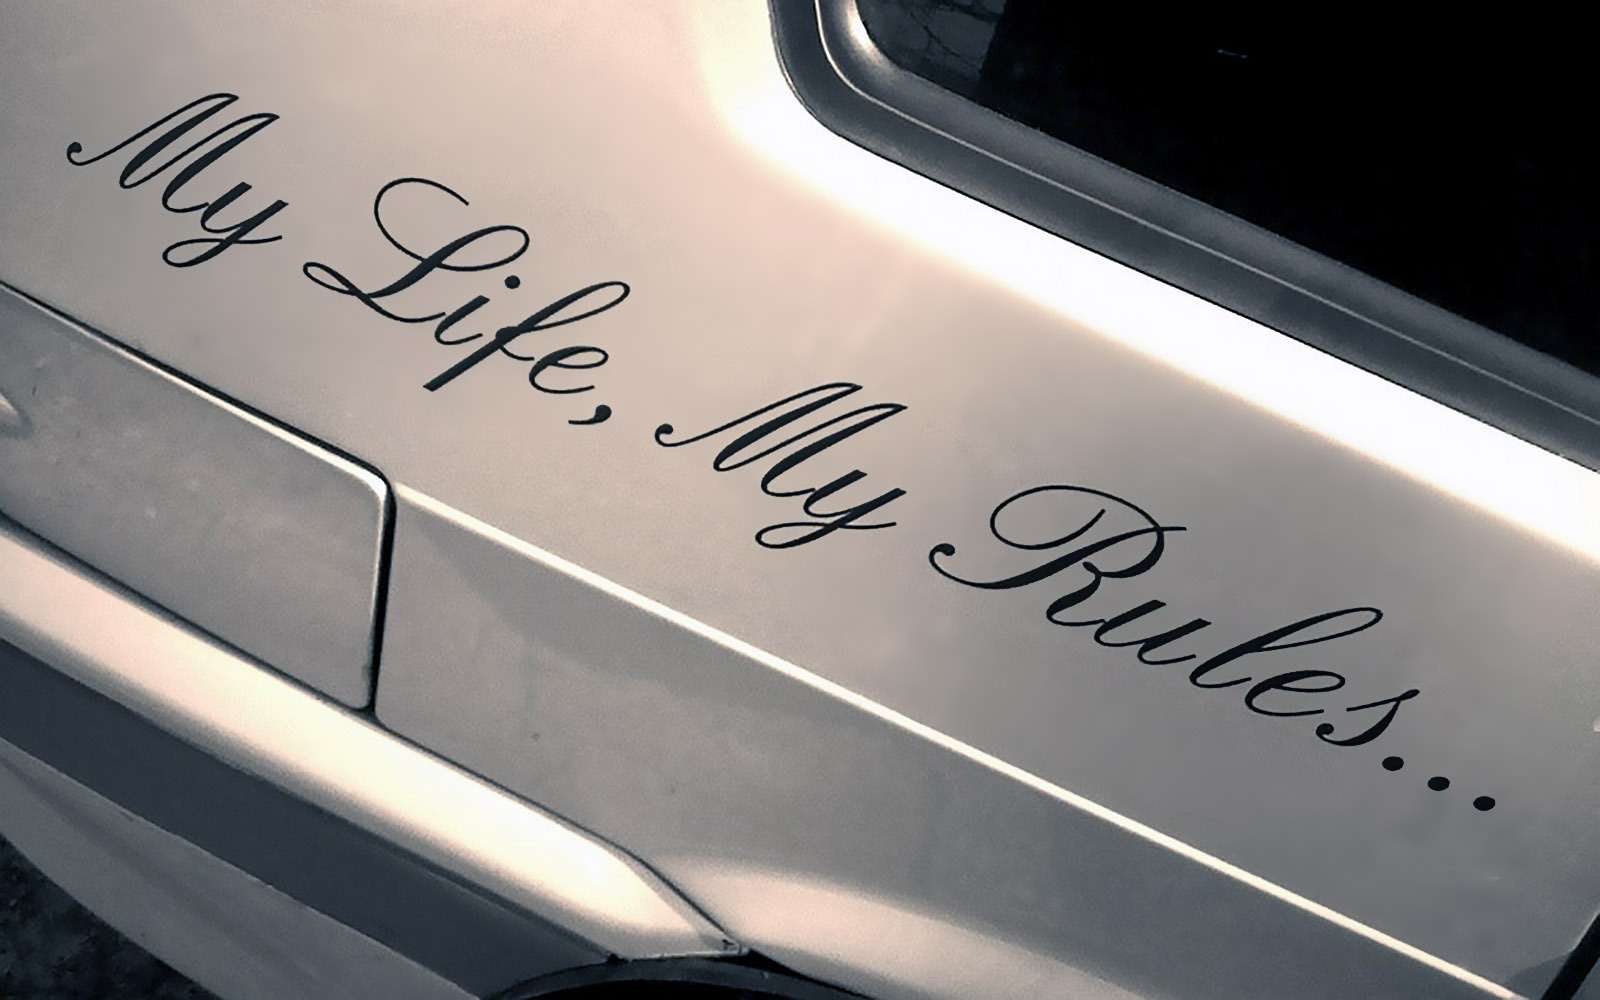 Me life my rules. Наклейка my Life my Rules. My Life my Rules наклейка на машину. Красивые надписи на машину. Наклейка на машину май лайф май рулез.